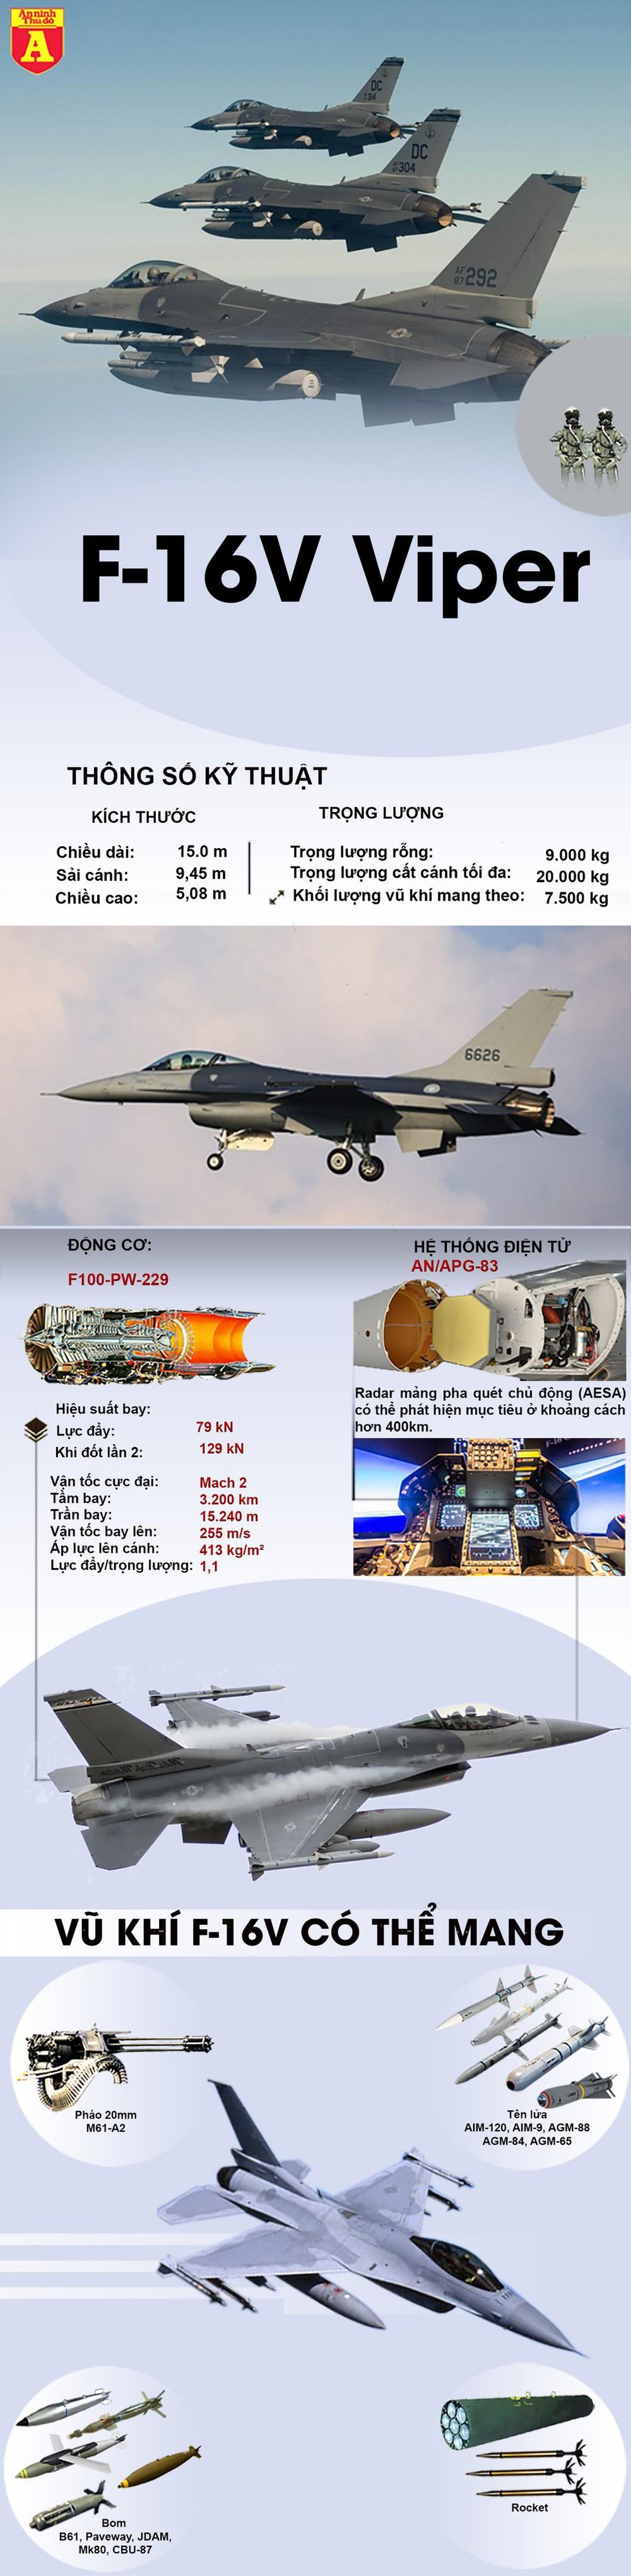 Khả năng không chiến của Biến thể F-16V Viper - Ảnh 1